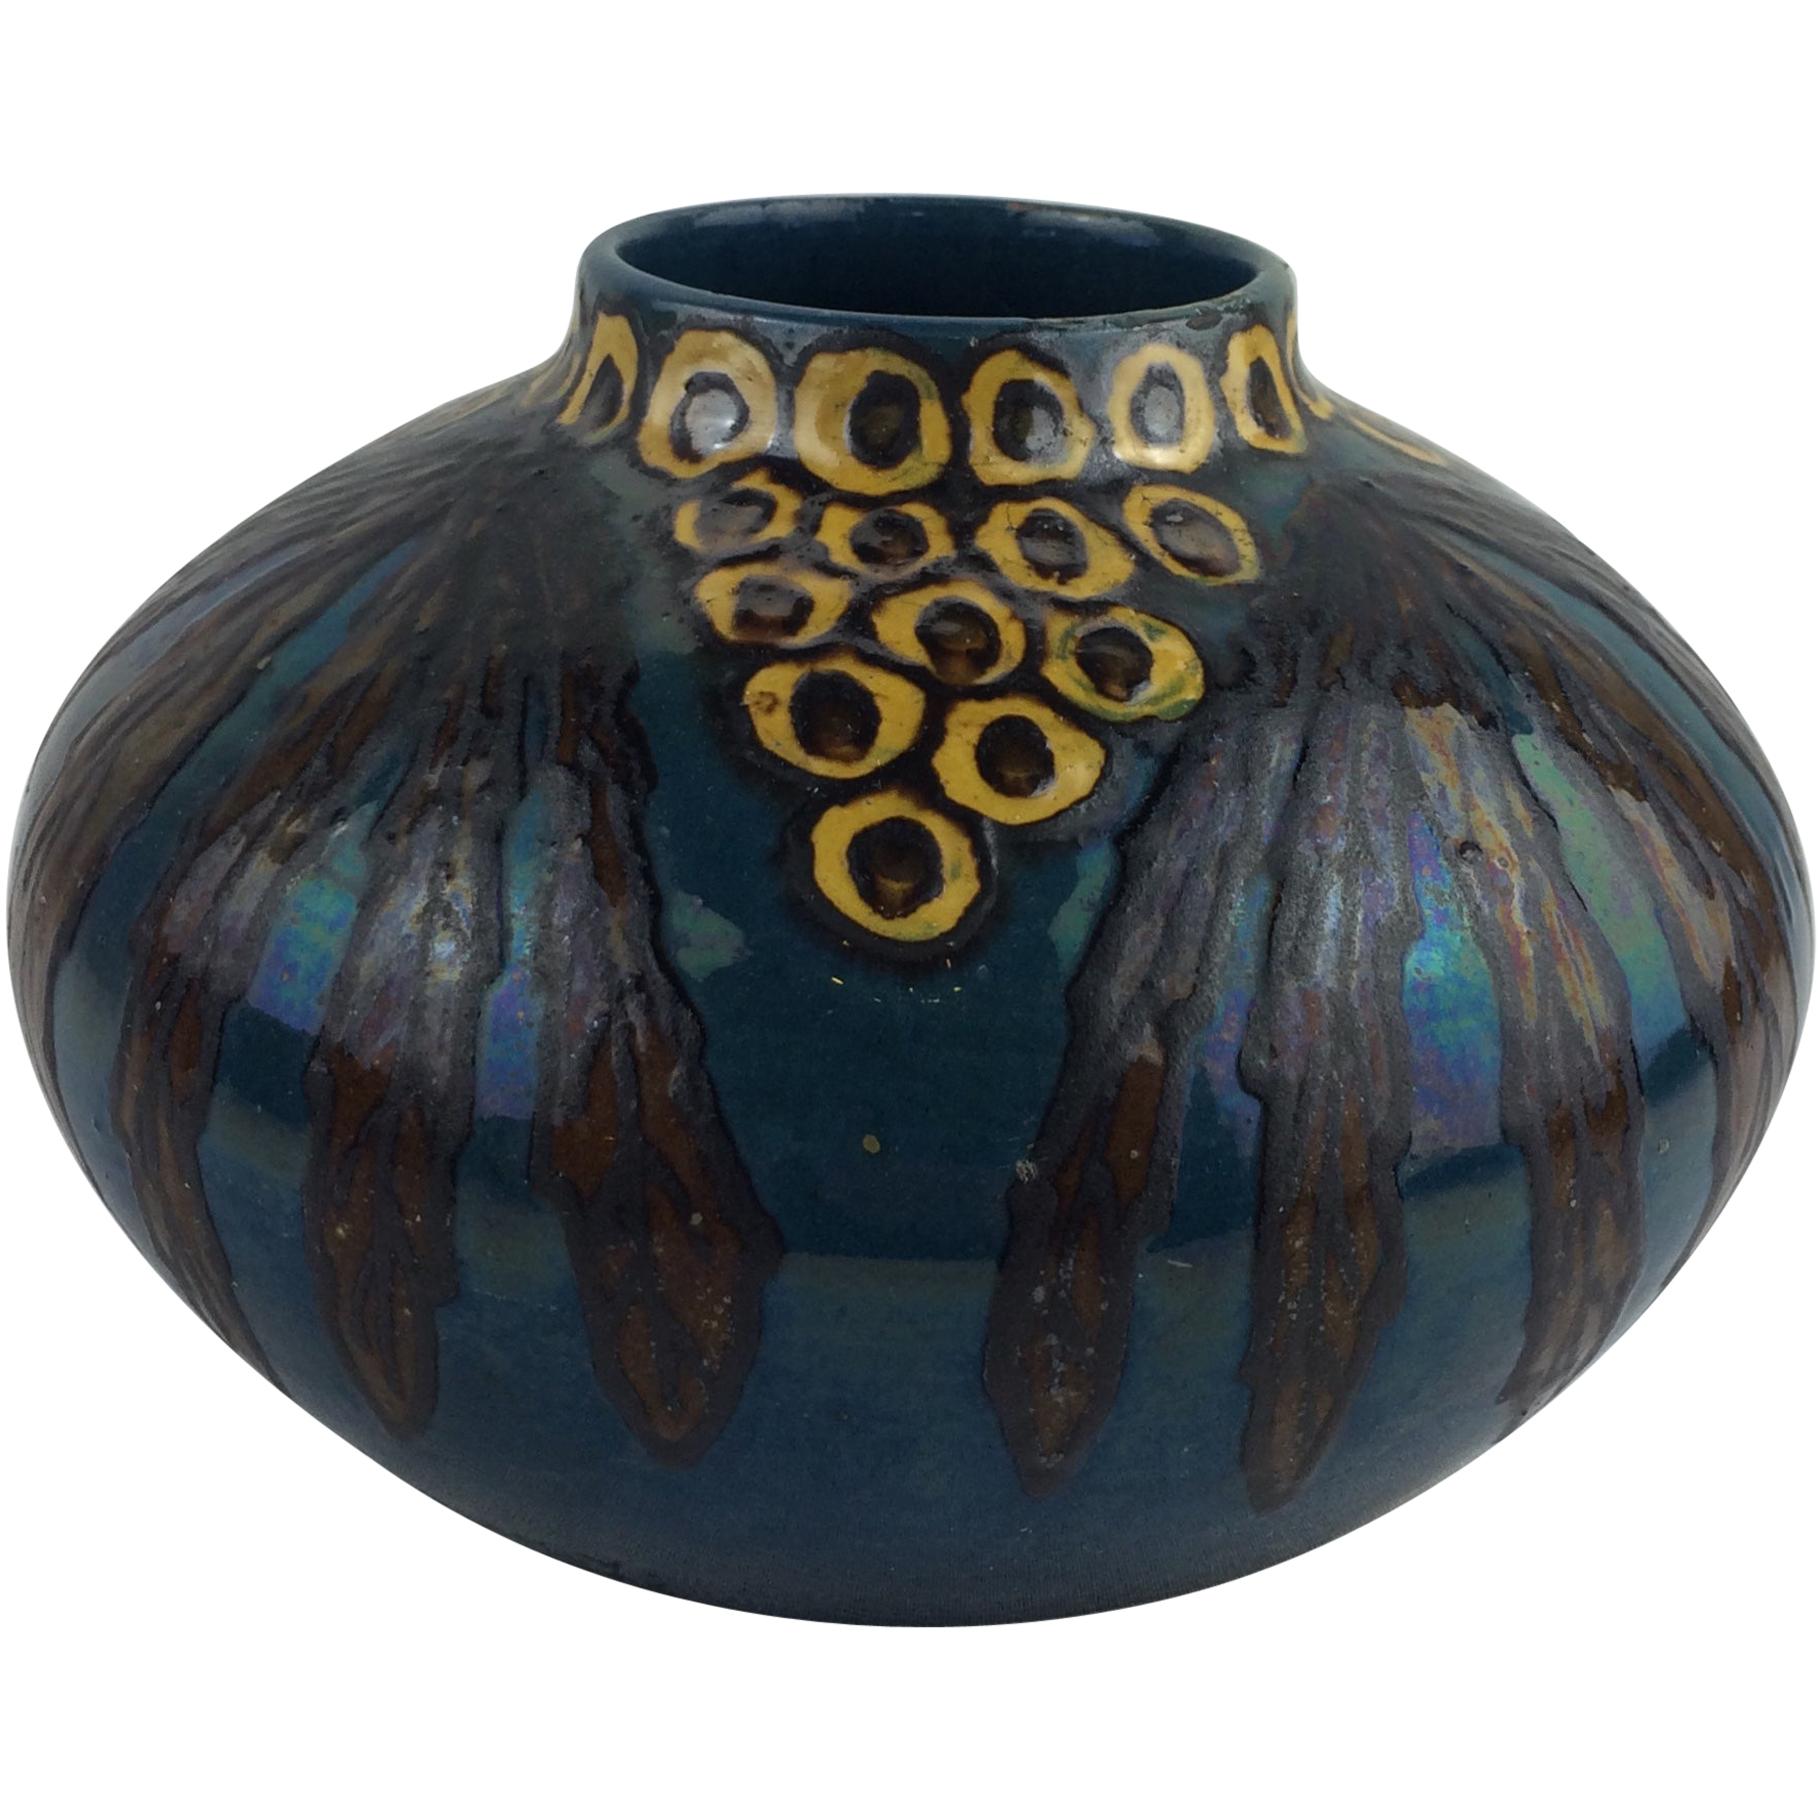 Stunning Art Deco Ceramic Vase by Emile Simonod, Signed